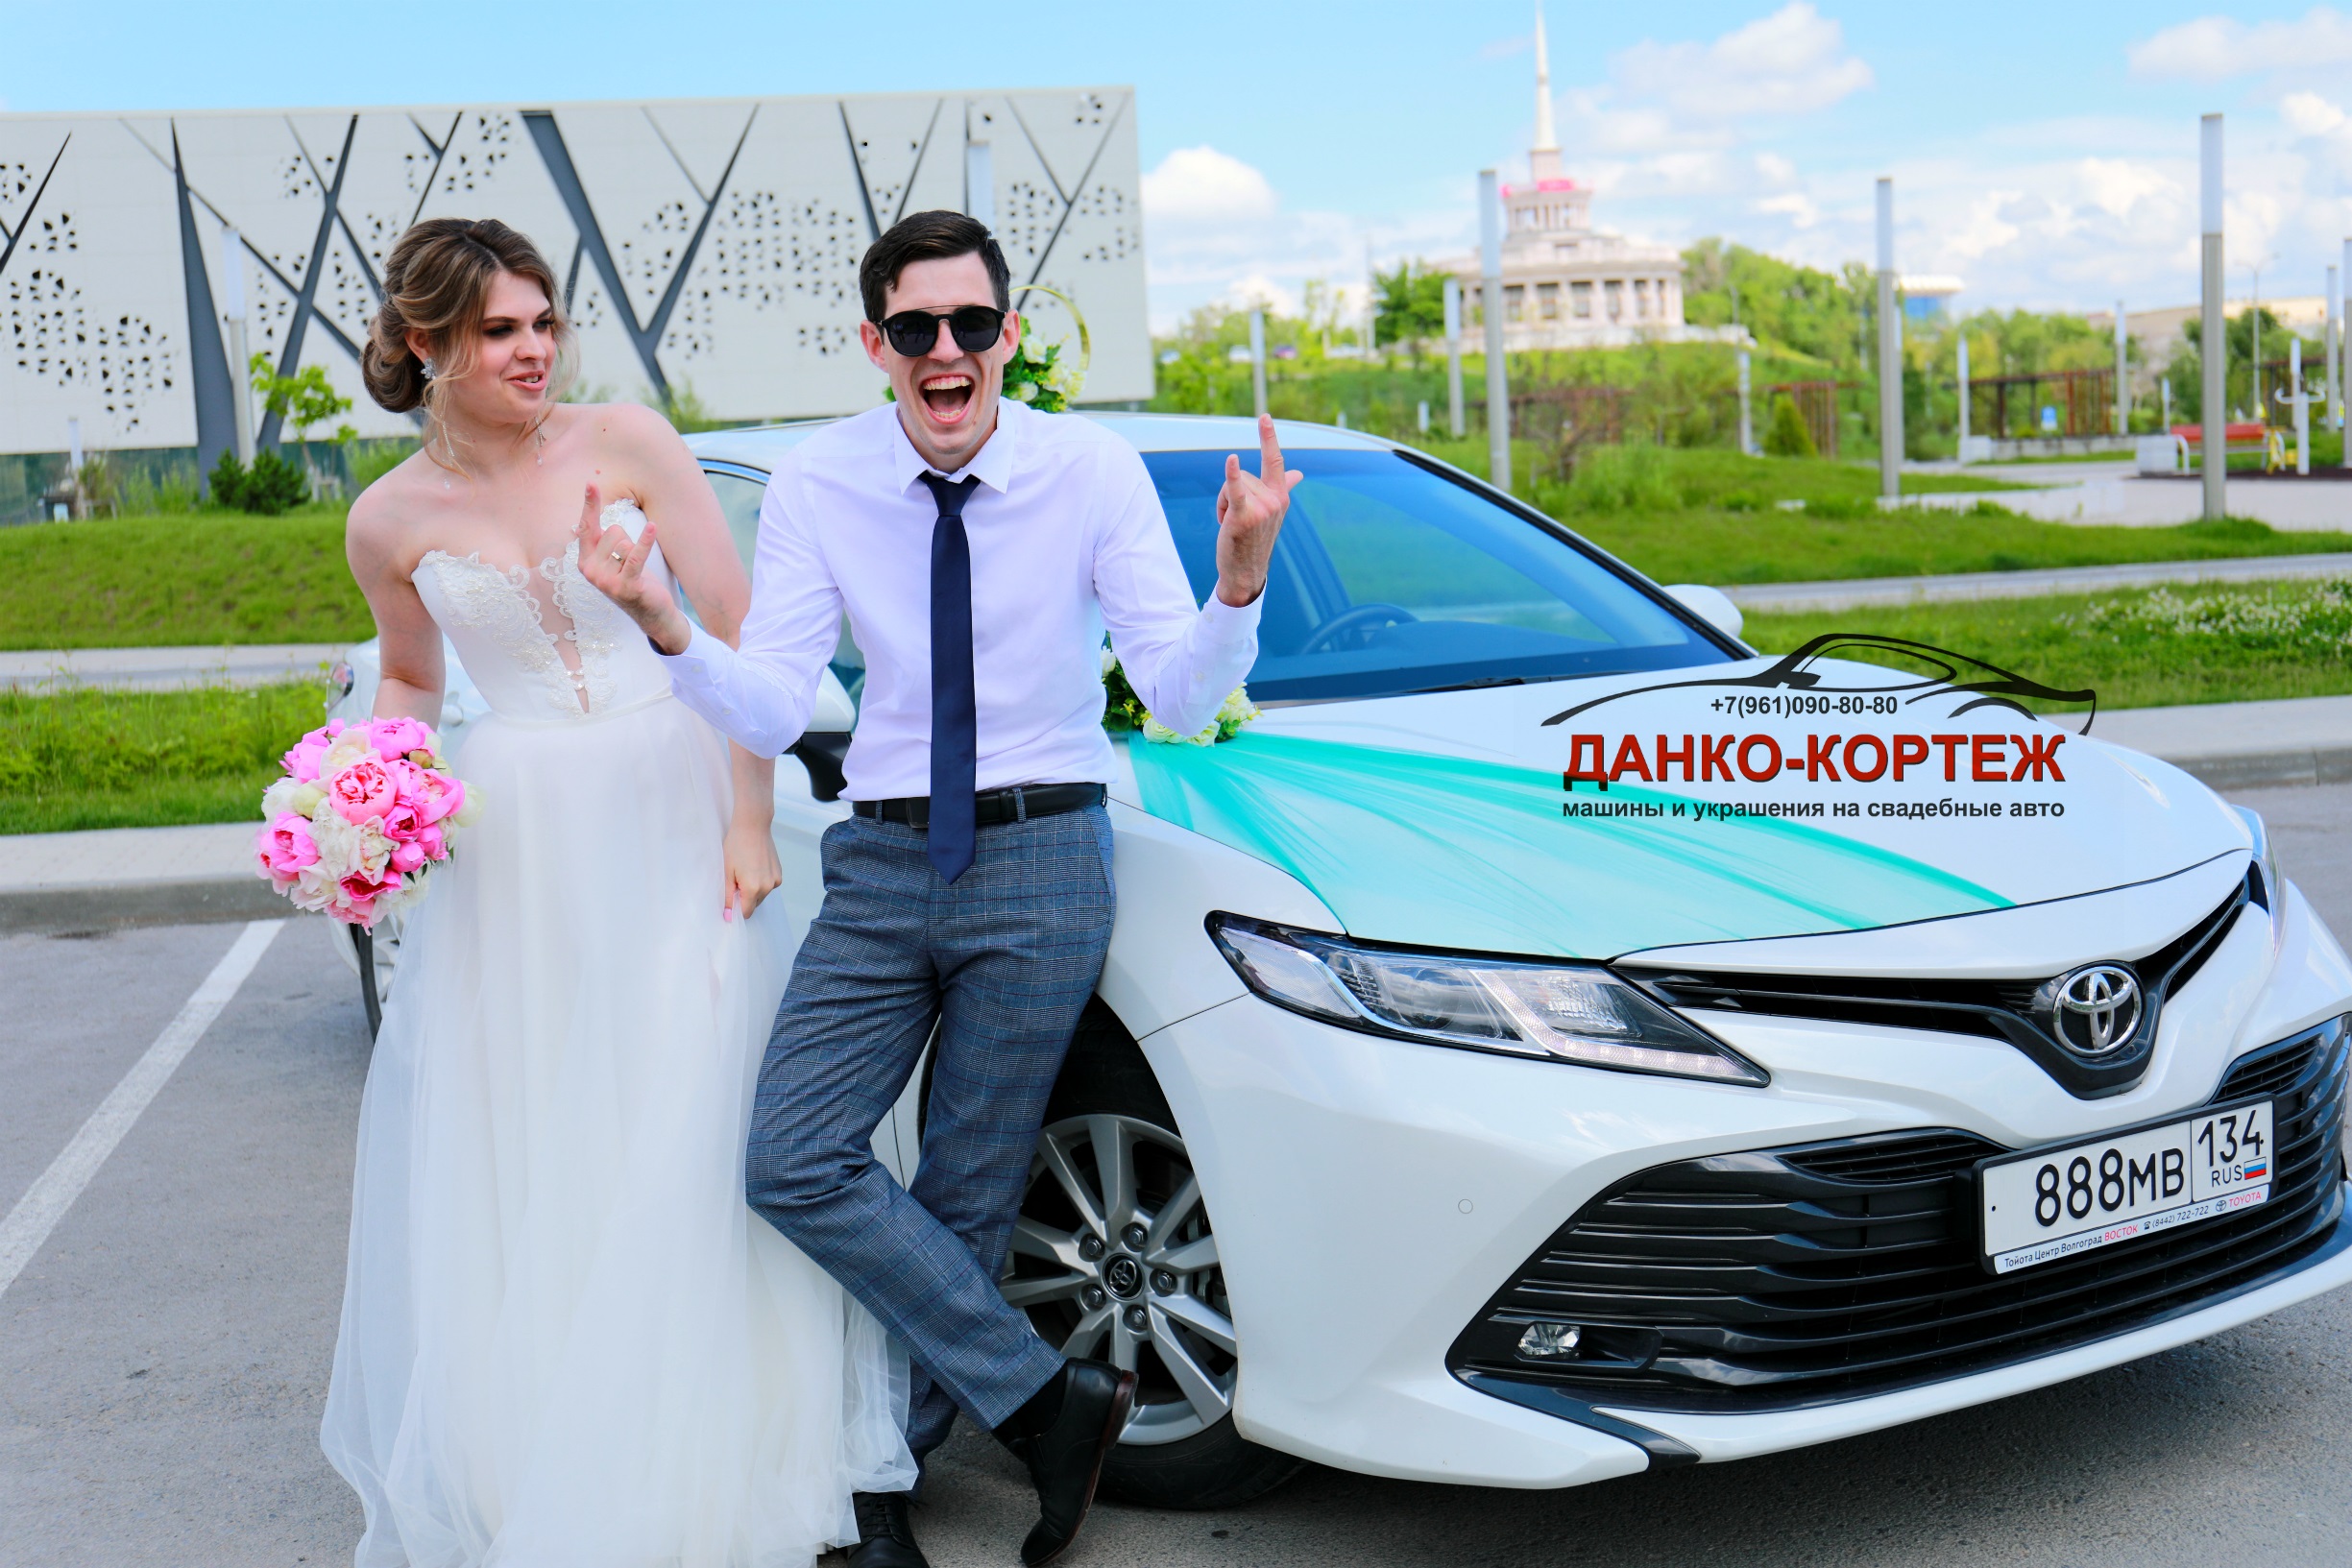 Наши клиенты - непременно довольные клиенты! Более десяти лет заняты организацией свадебных кортежей в Волгограде и области, толк в работе знаем! Автомобили и свадебные украшения со знаком качества - это про компанию ДАНКО-КОРТЕЖ ВОЛГОГРАД!